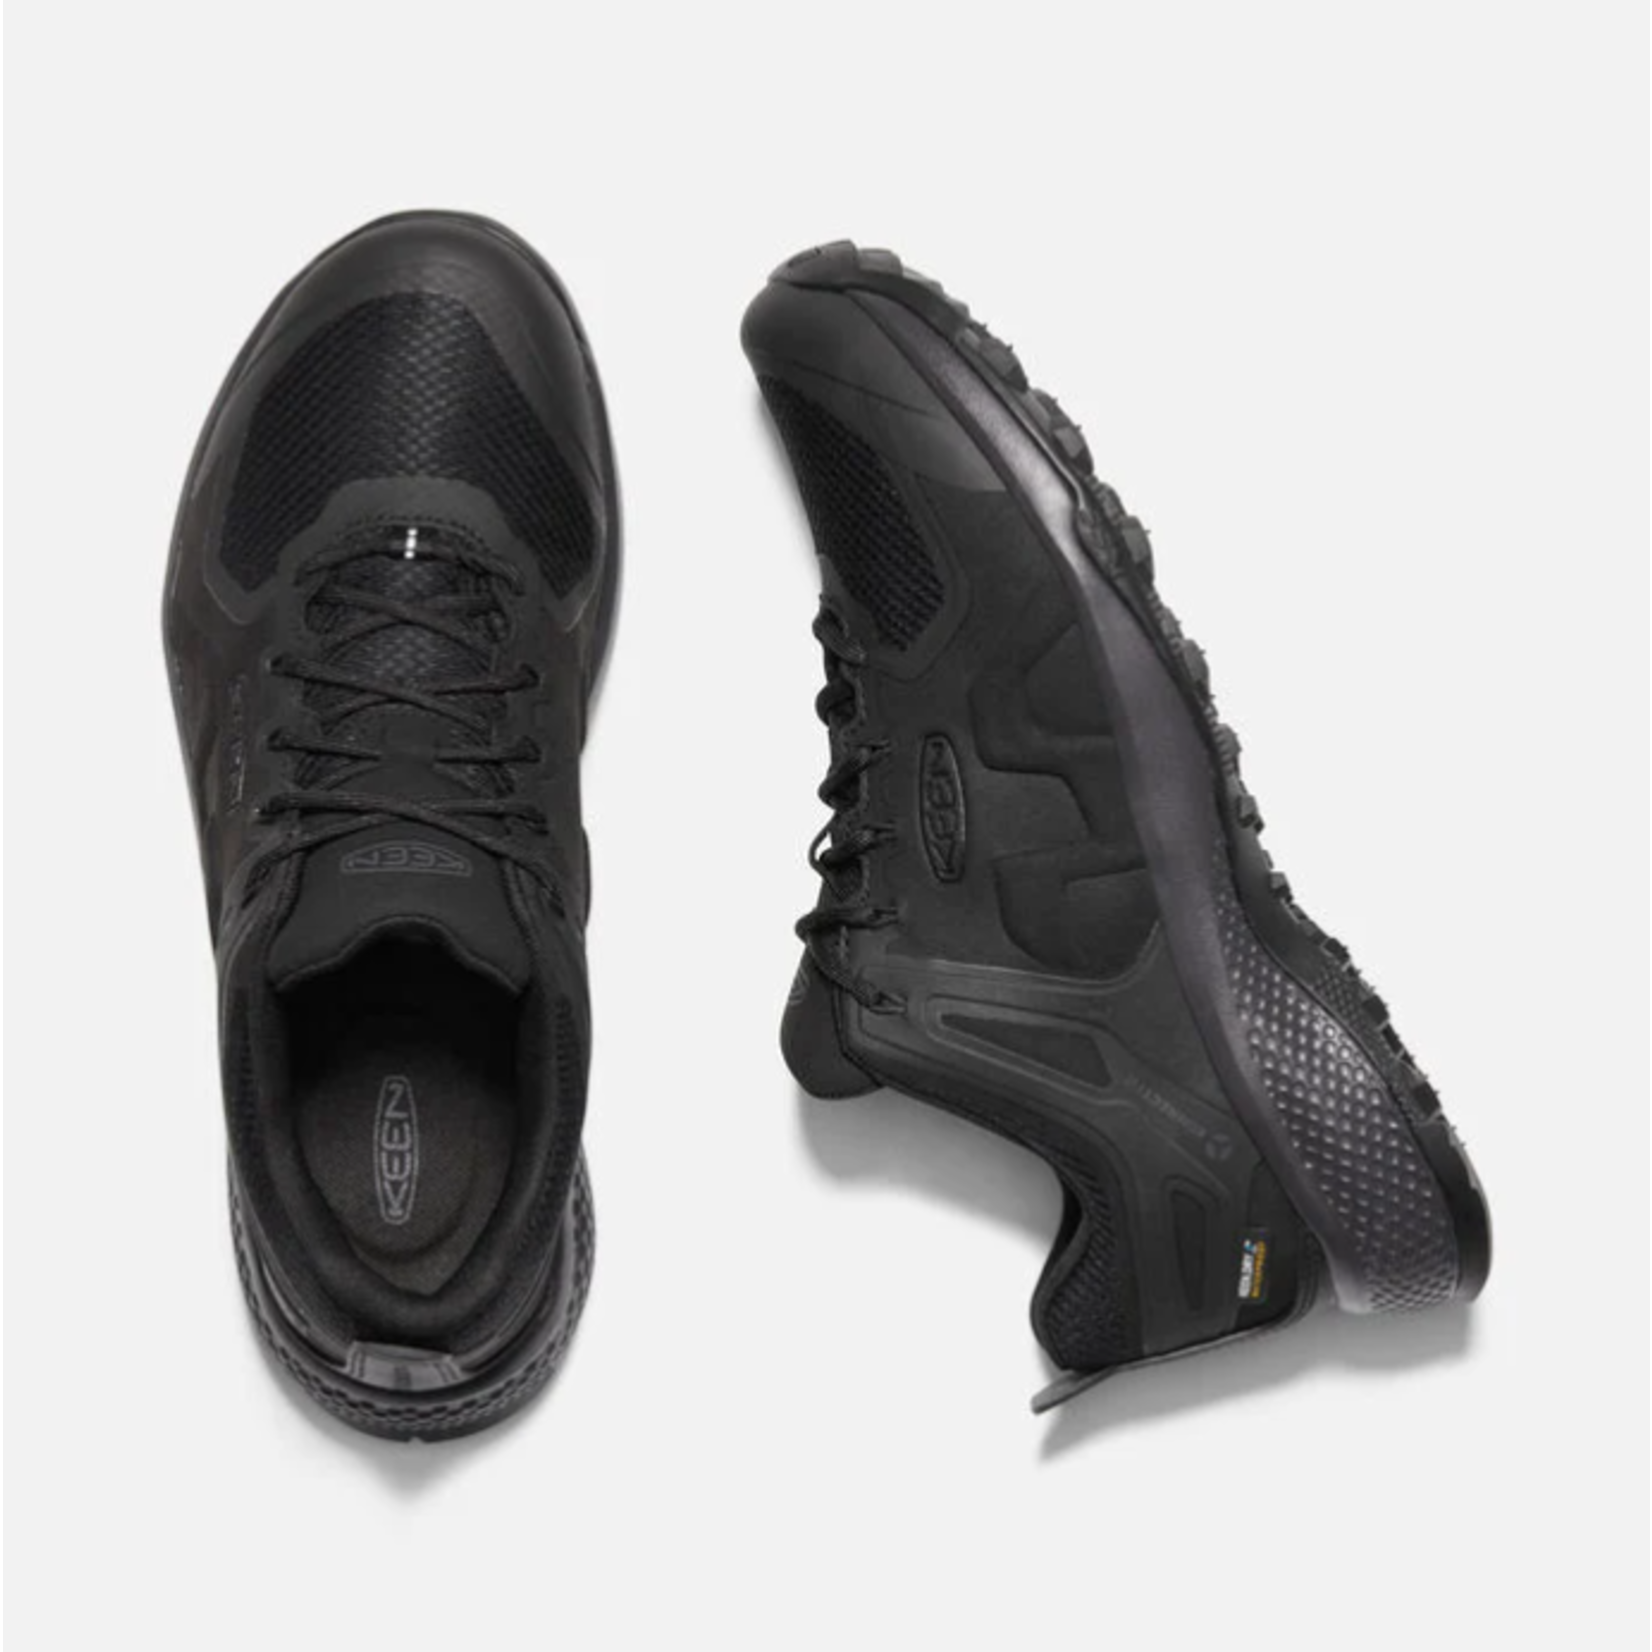 KEEN Keen Men's Explore Waterproof Shoe Black 1021611